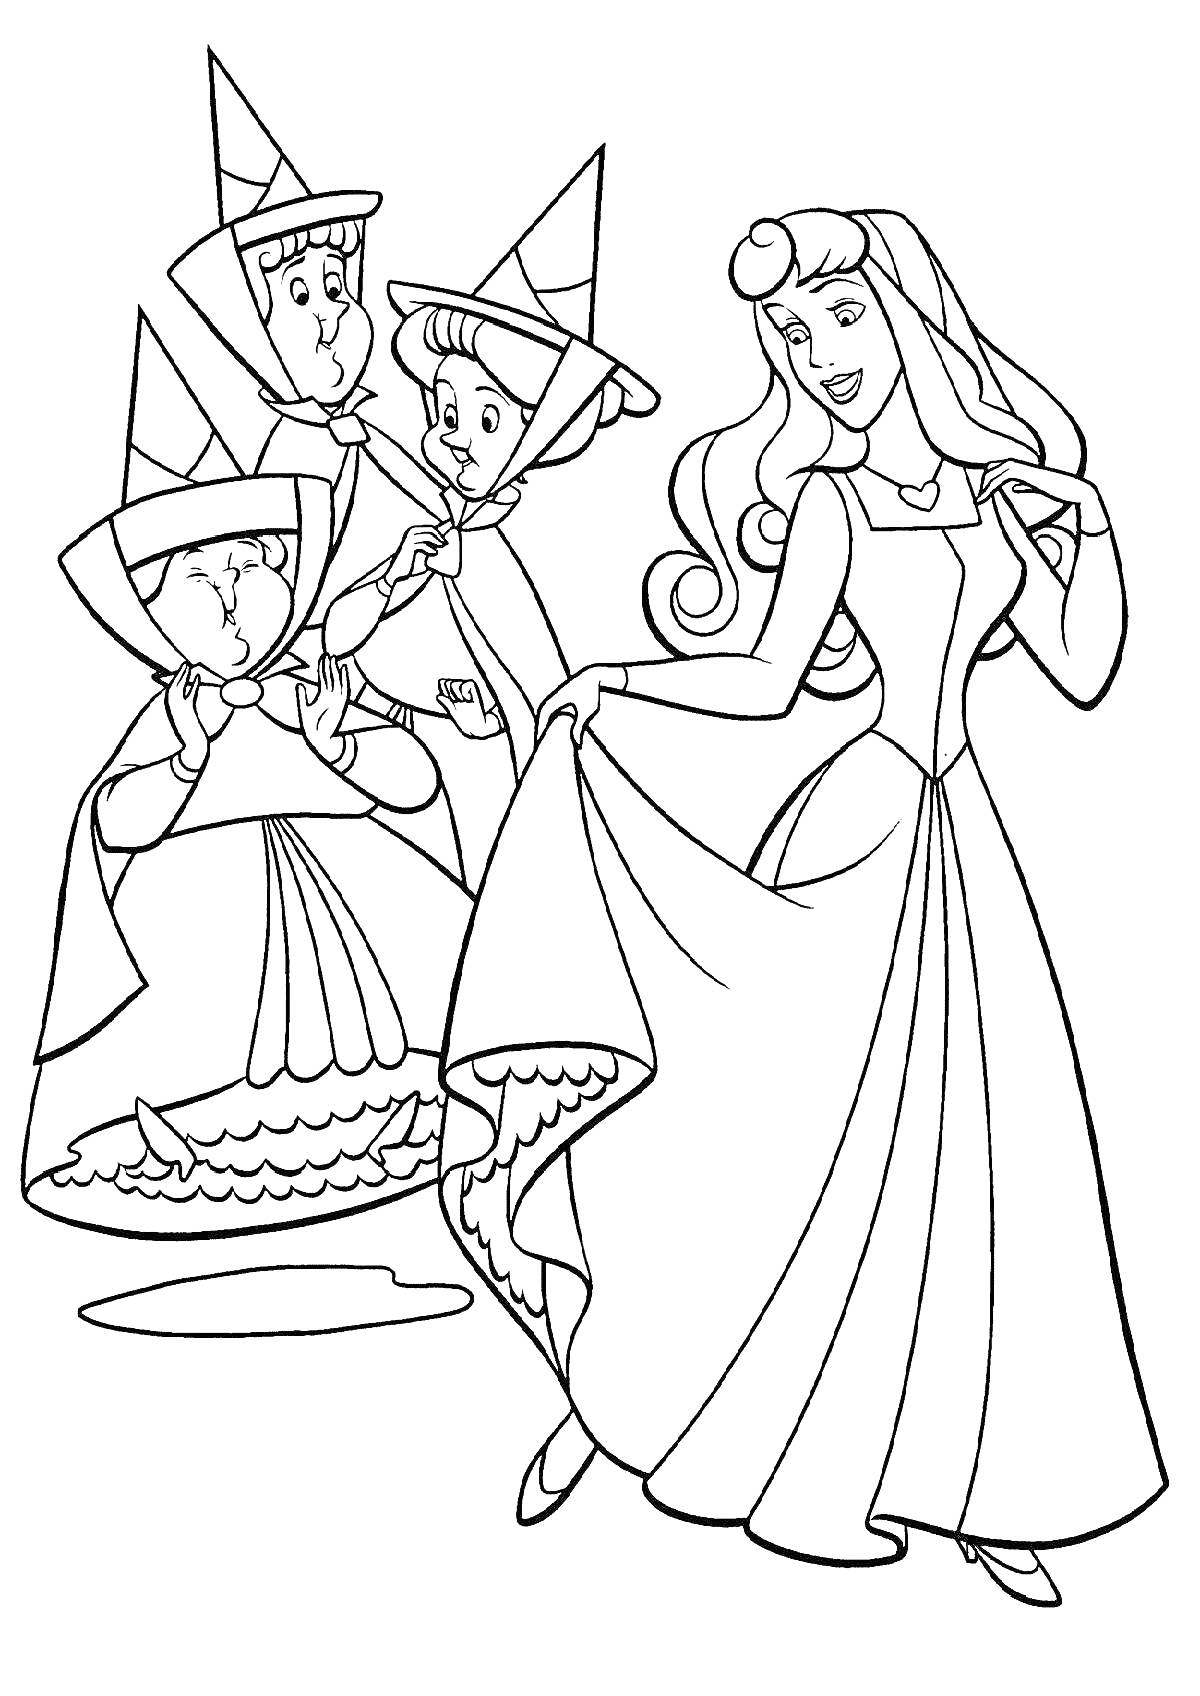 Спящая красавица с тремя феями в шляпах и платьях